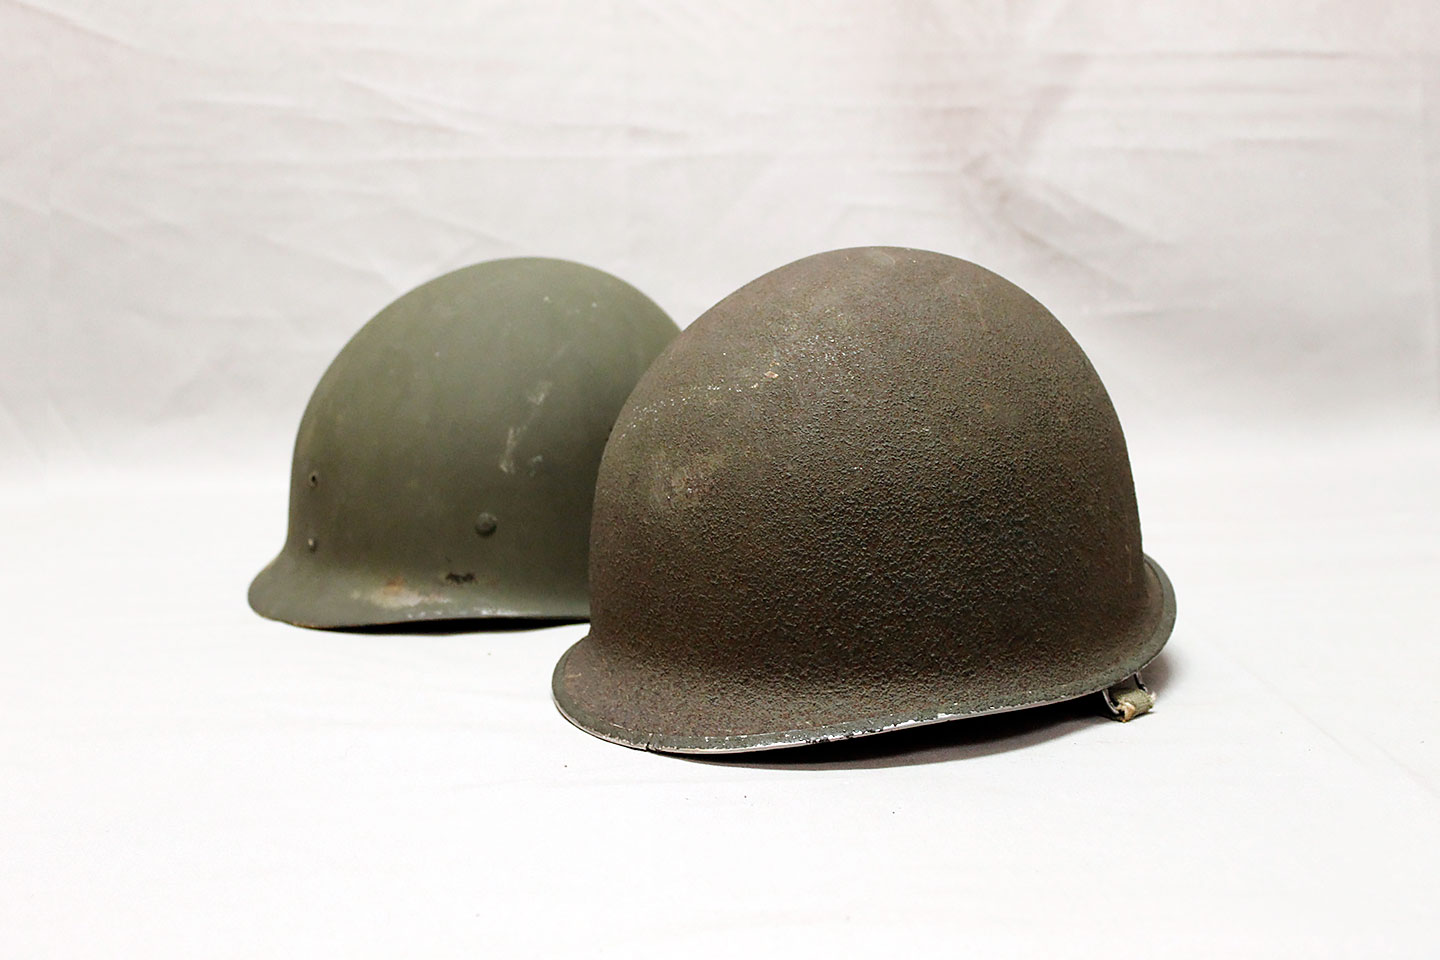 WW2 US Military Steel ABS M1 Helmet WWII Outdoor Army Headwear Equipmen